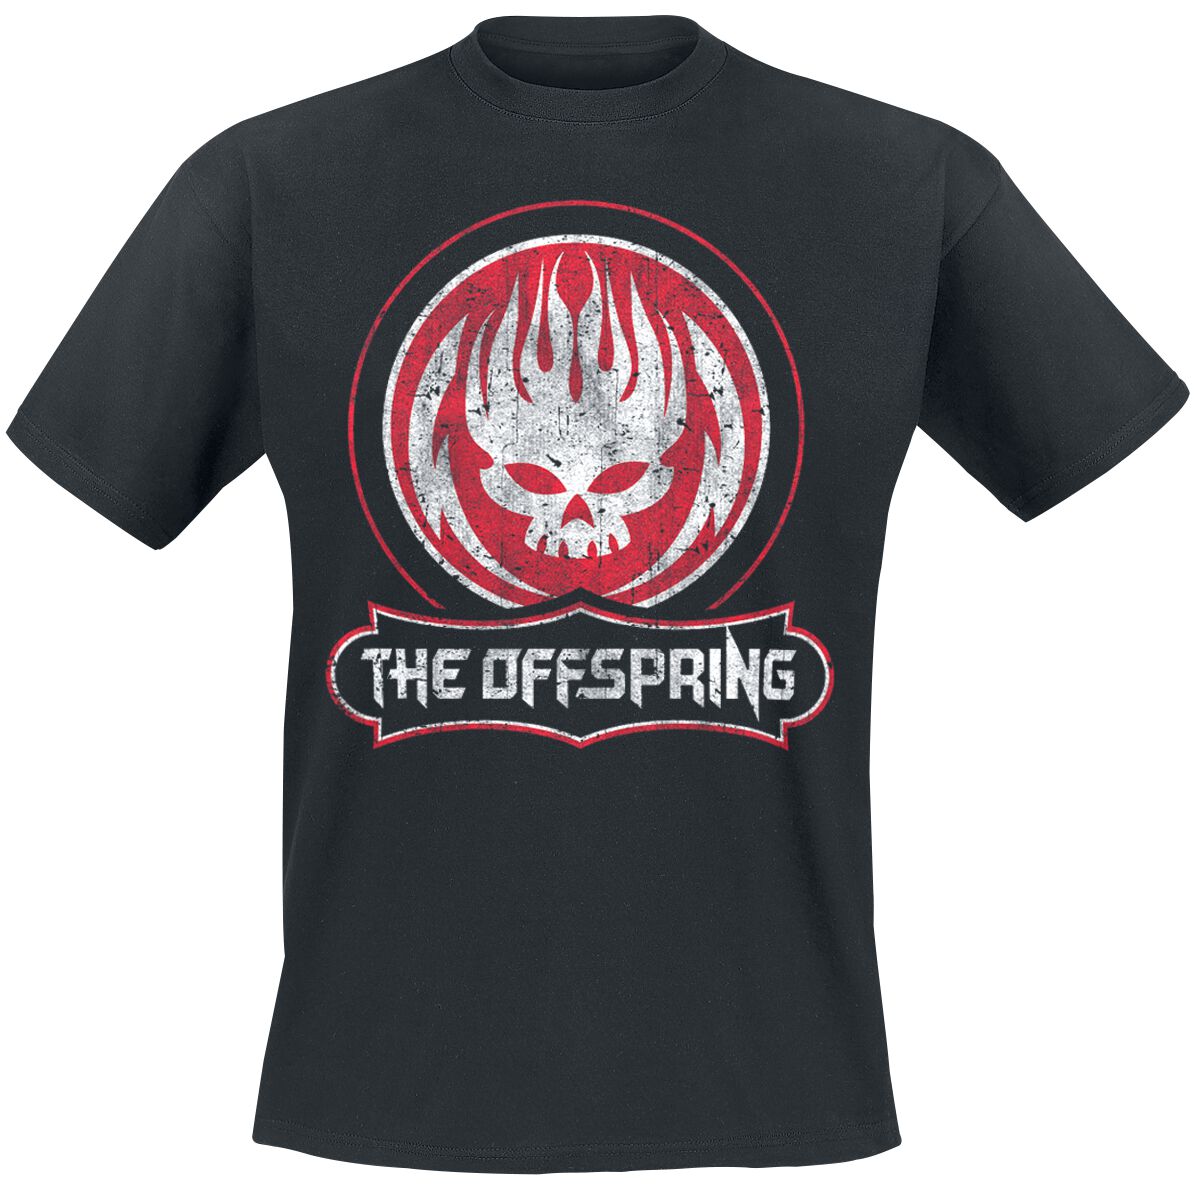 The Offspring T-Shirt - Distressed Skull - S bis XXL - für Männer - Größe M - schwarz  - Lizenziertes Merchandise!